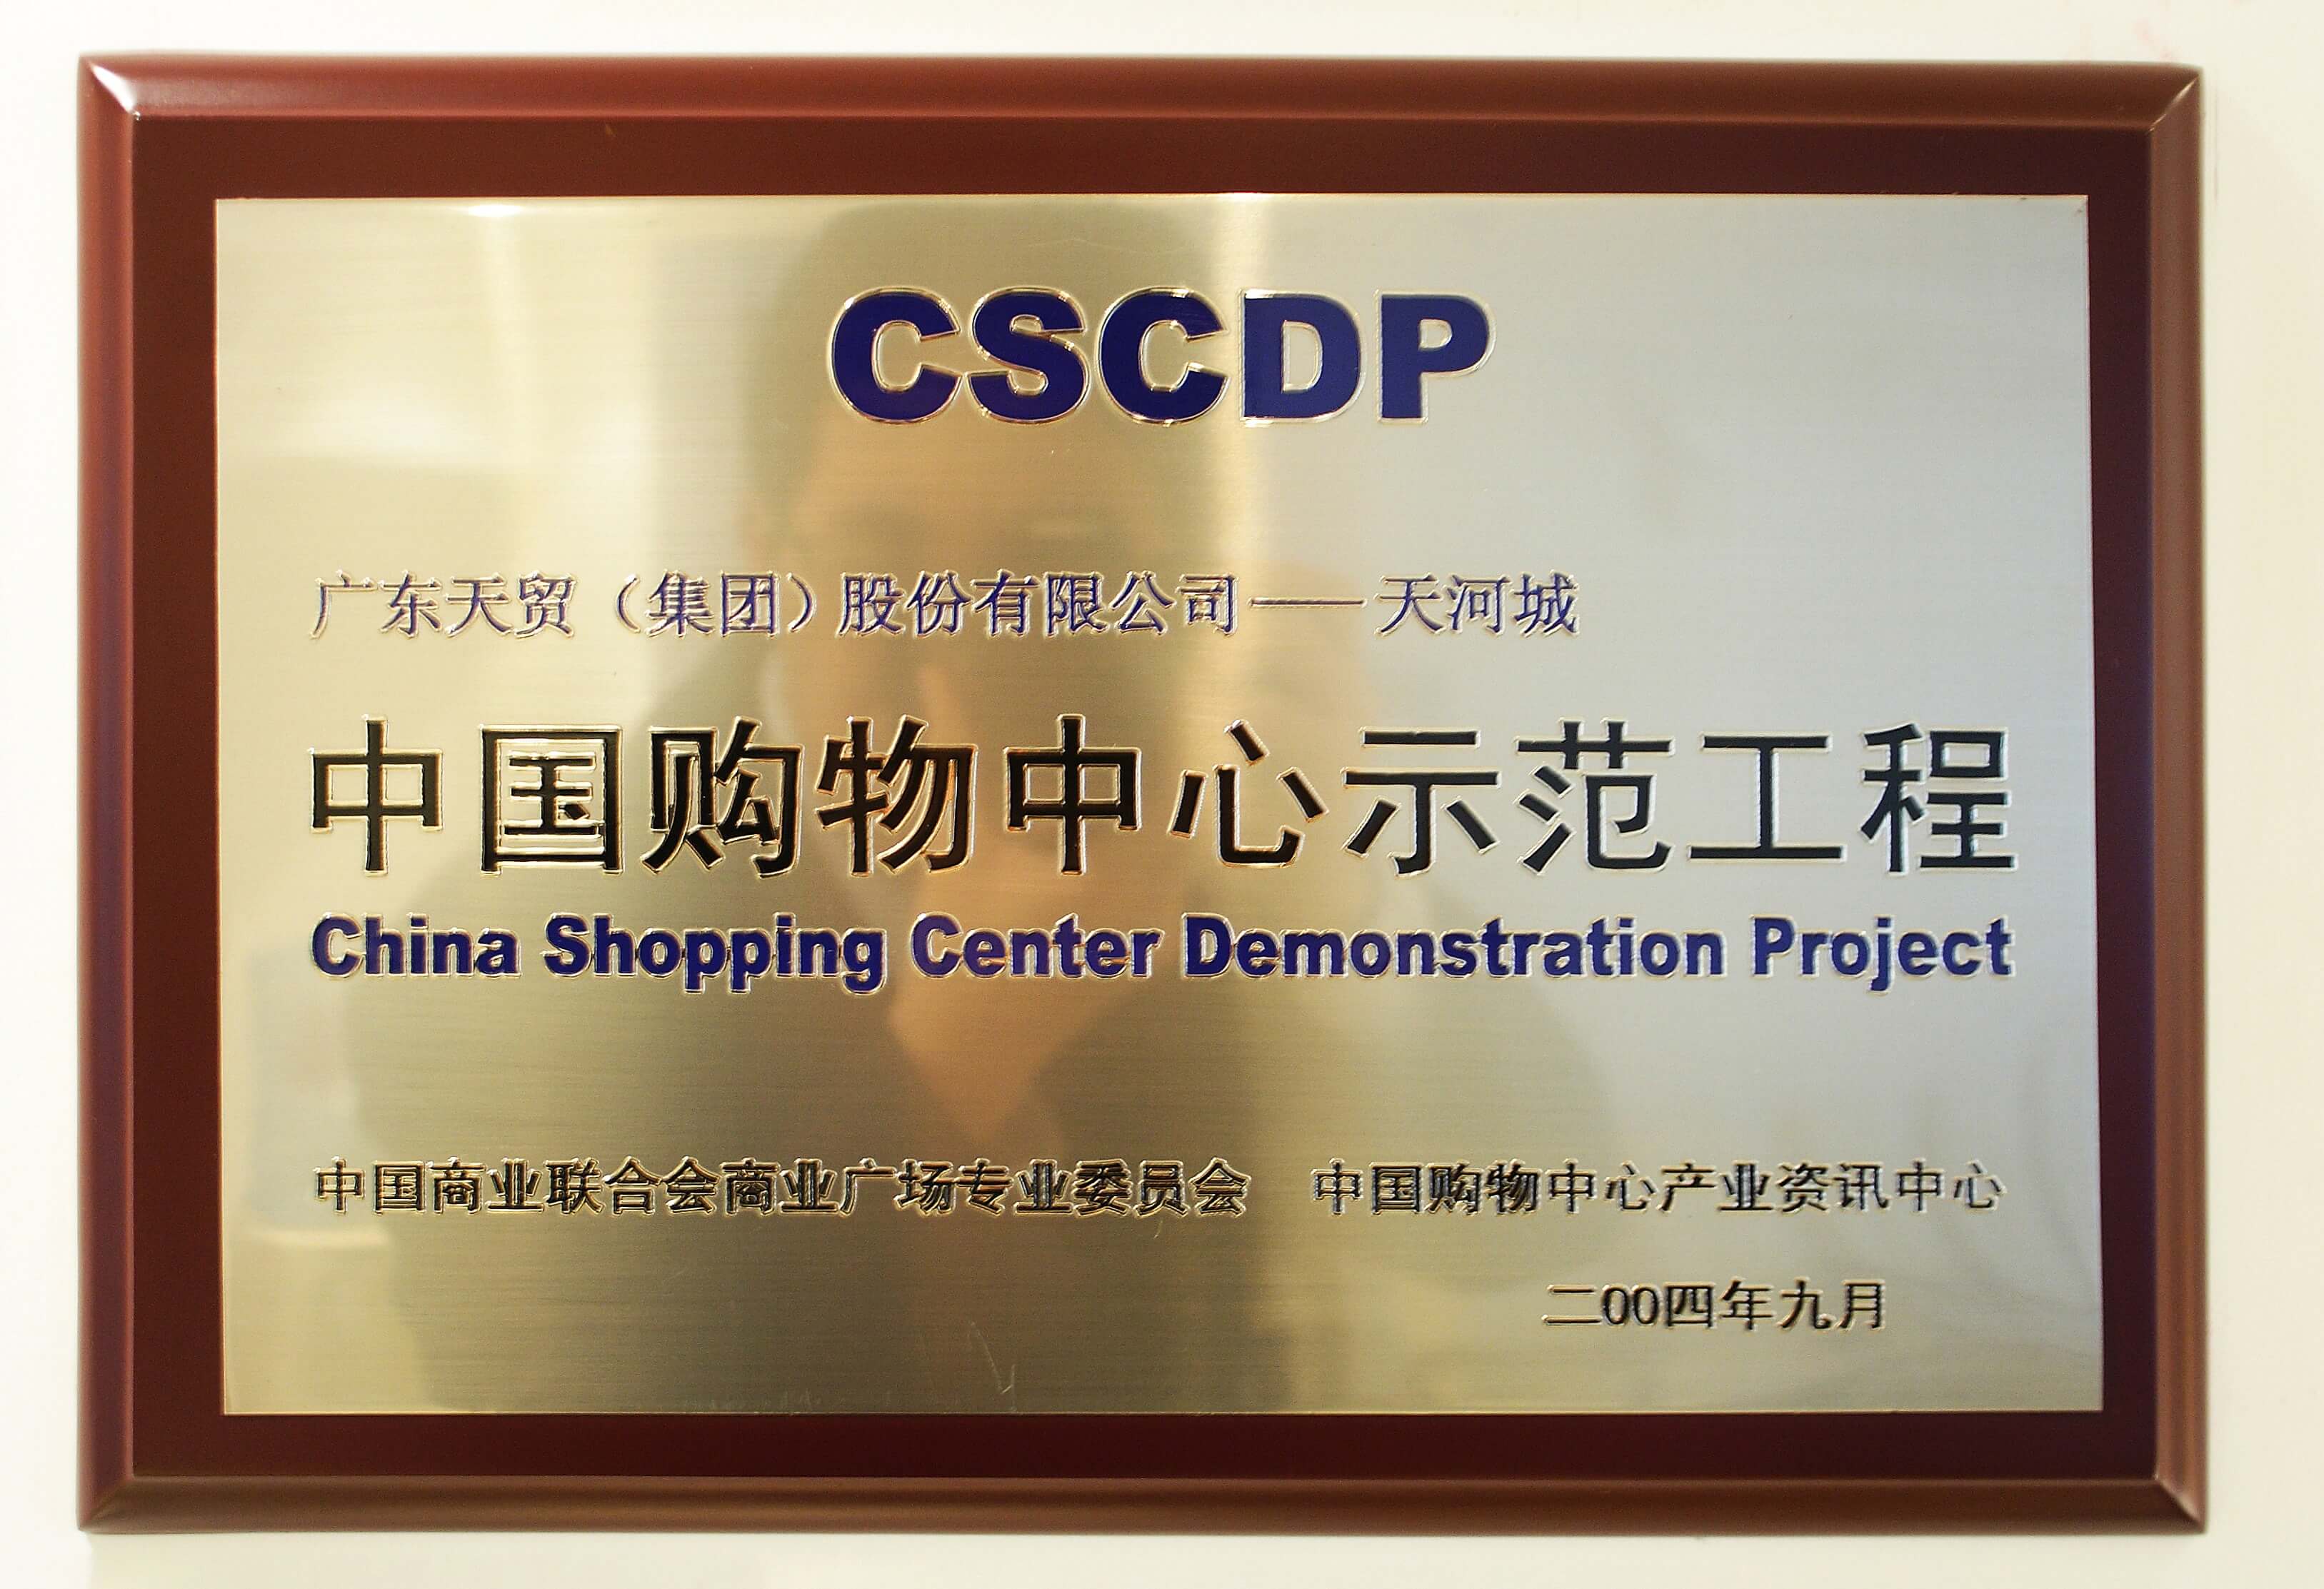 2004年广东博天堂918国际厅天河城公司获评中国购物中心示范工程-min.jpg